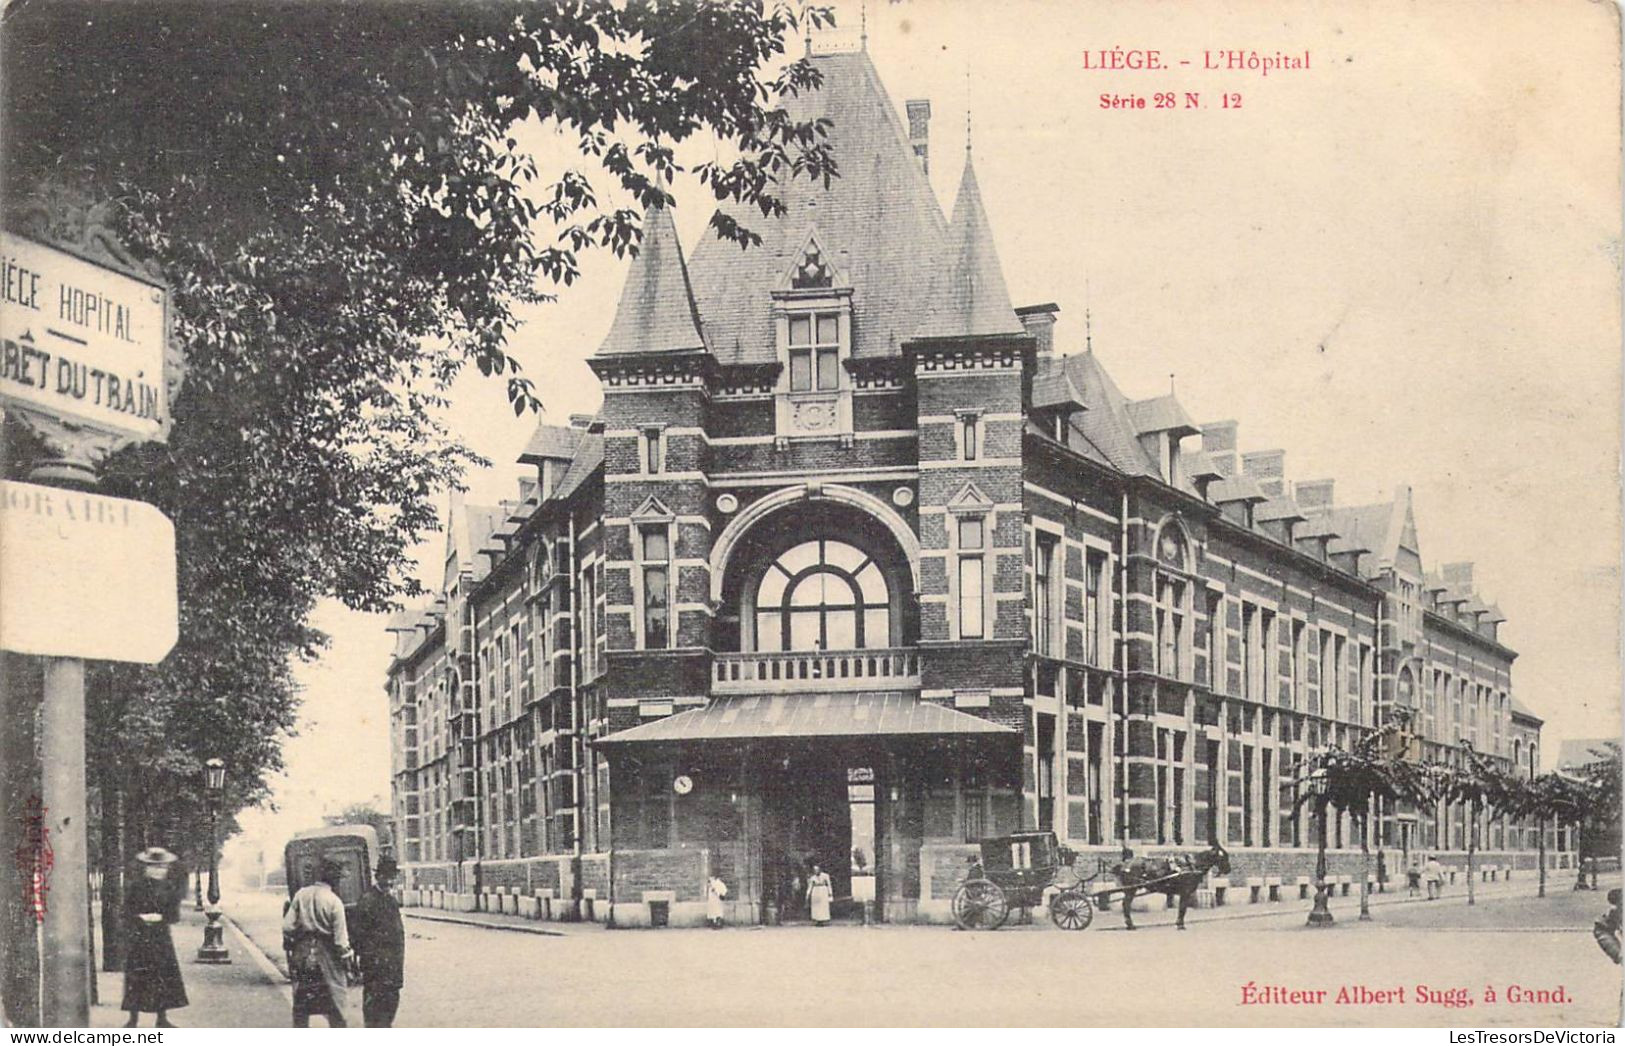 BELGIQUE - Liège - L'Hôpital - Carte Postale Ancienne - Liege